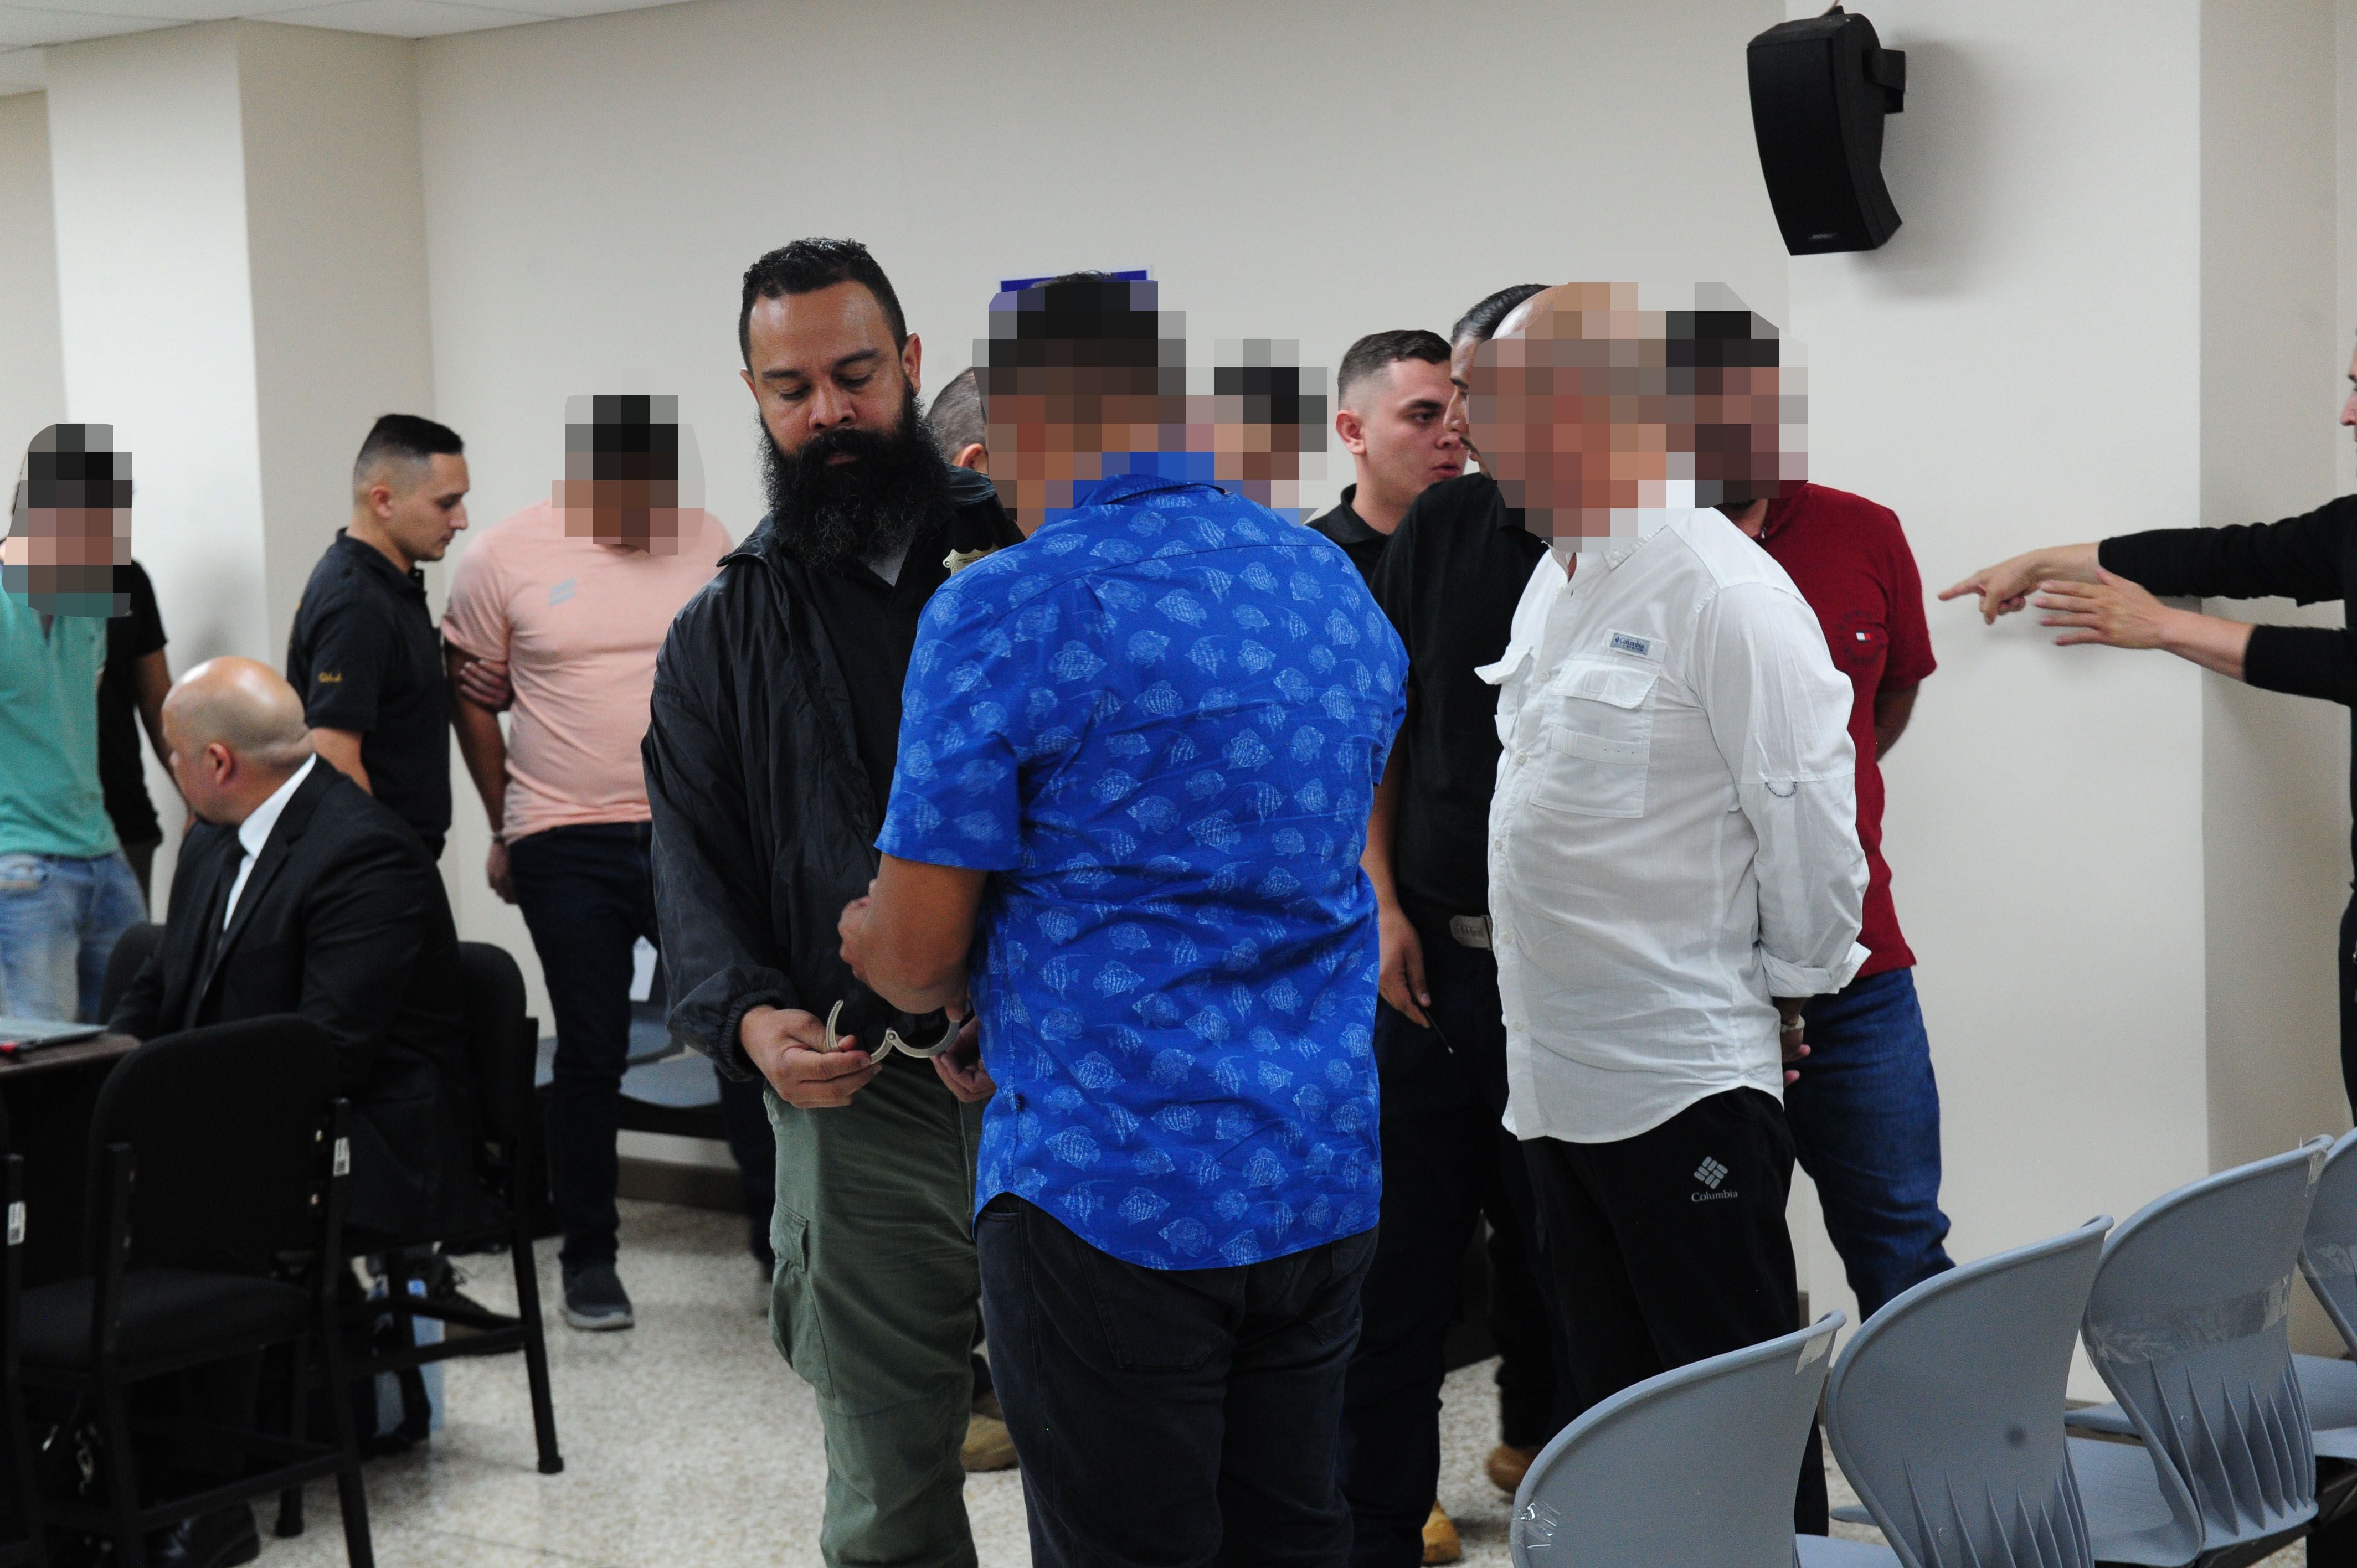 El juicio en el caso denominado Pancho Villa cuenta con 14 imputados. Foto: Marvin Caravaca.